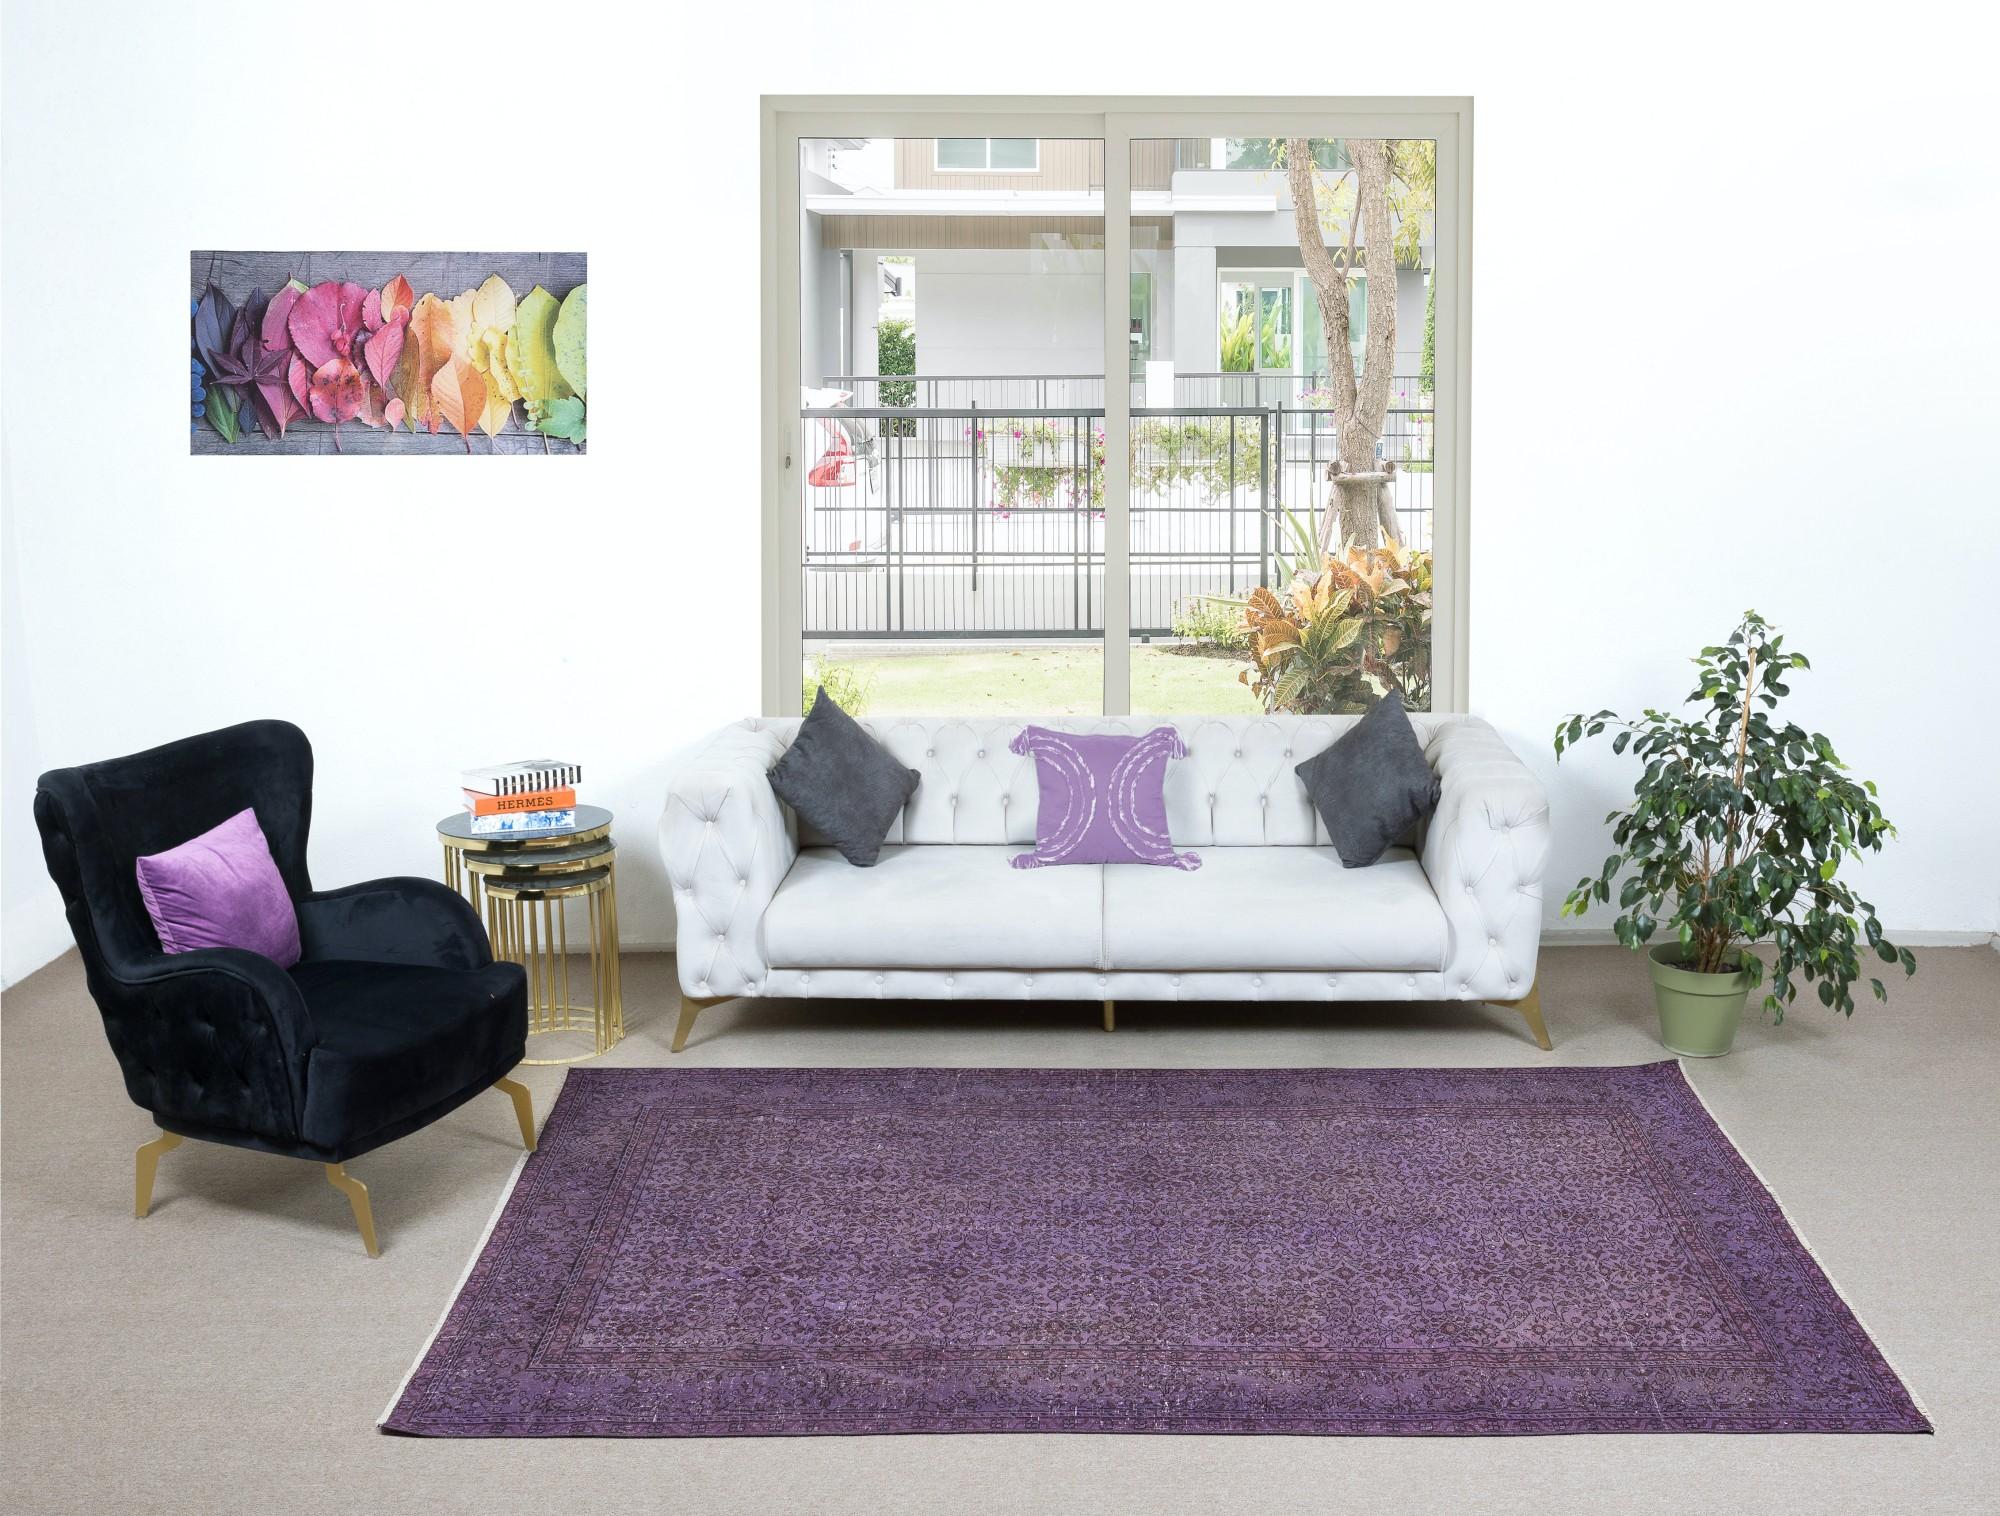 6.2x9.3 Ft Prächtige handgefertigte türkische Teppich mit Blumen-Design & lila Hintergrund (Handgewebt)